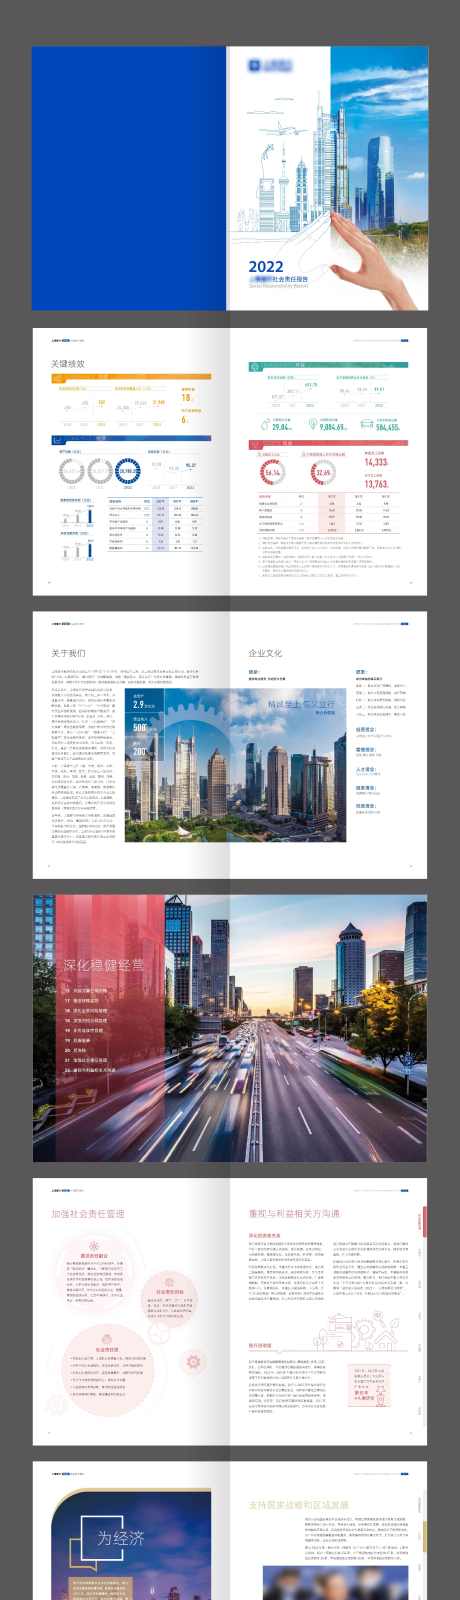 上海金融银行数据企业年度报告画册_源文件下载_AI格式_2363X22357像素-报告,画册,企业,年度,银行,数据,金融,上海-作品编号:2024010211299925-源文件库-ywjfx.cn